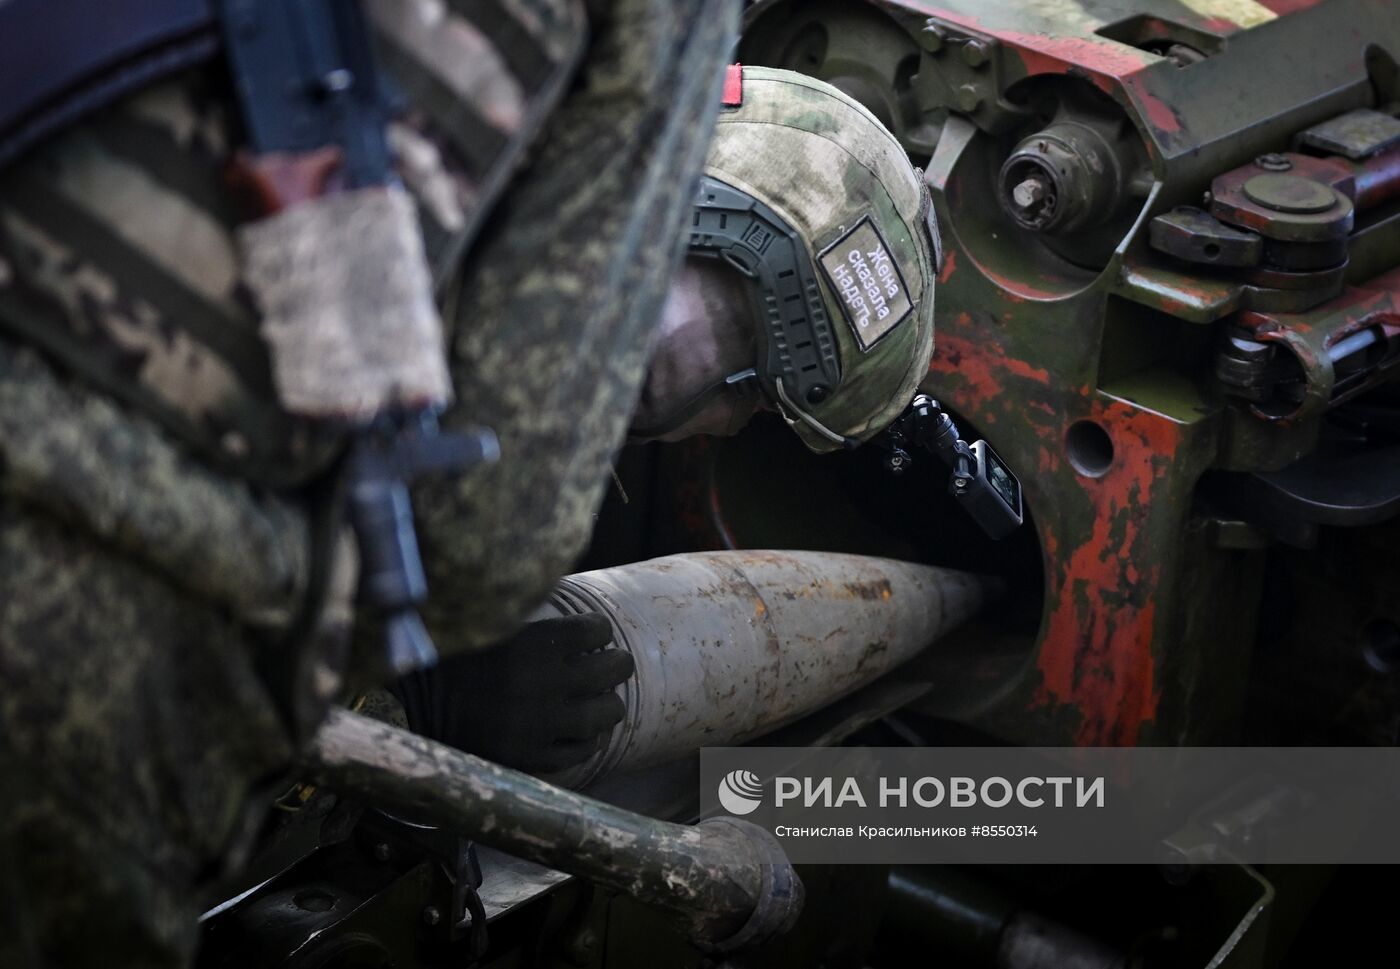 Боевая работа 152-мм пушки 2А3б "Гиацинт-Б" на Краснолиманском направлении СВО